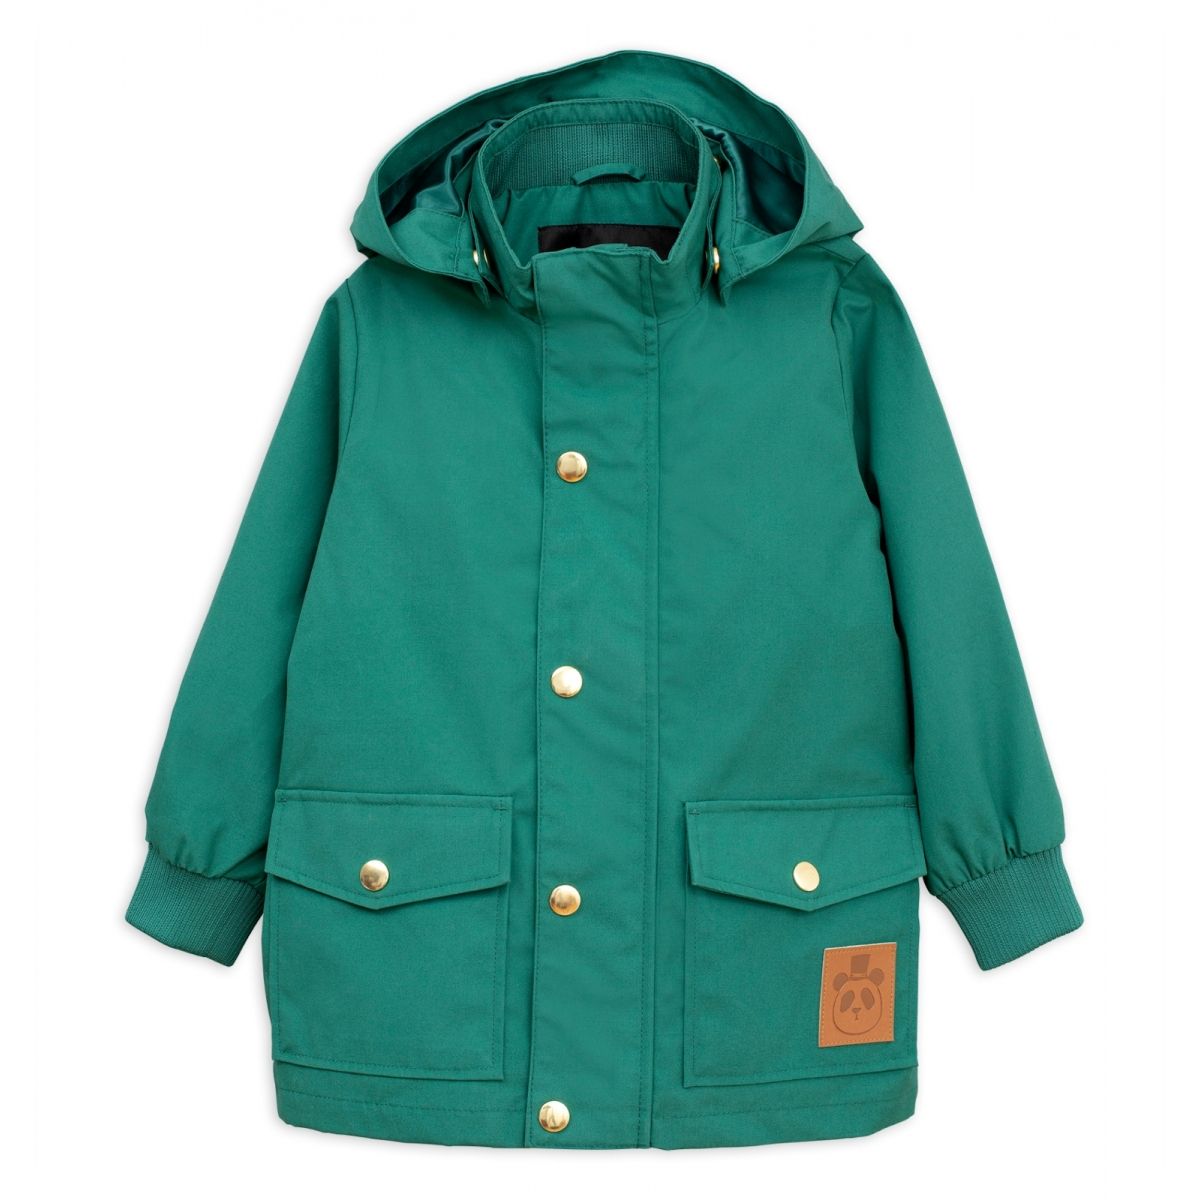 Mini Rodini - Pico winter jacket green - Coats, jackets & coveralls - 1871010675 